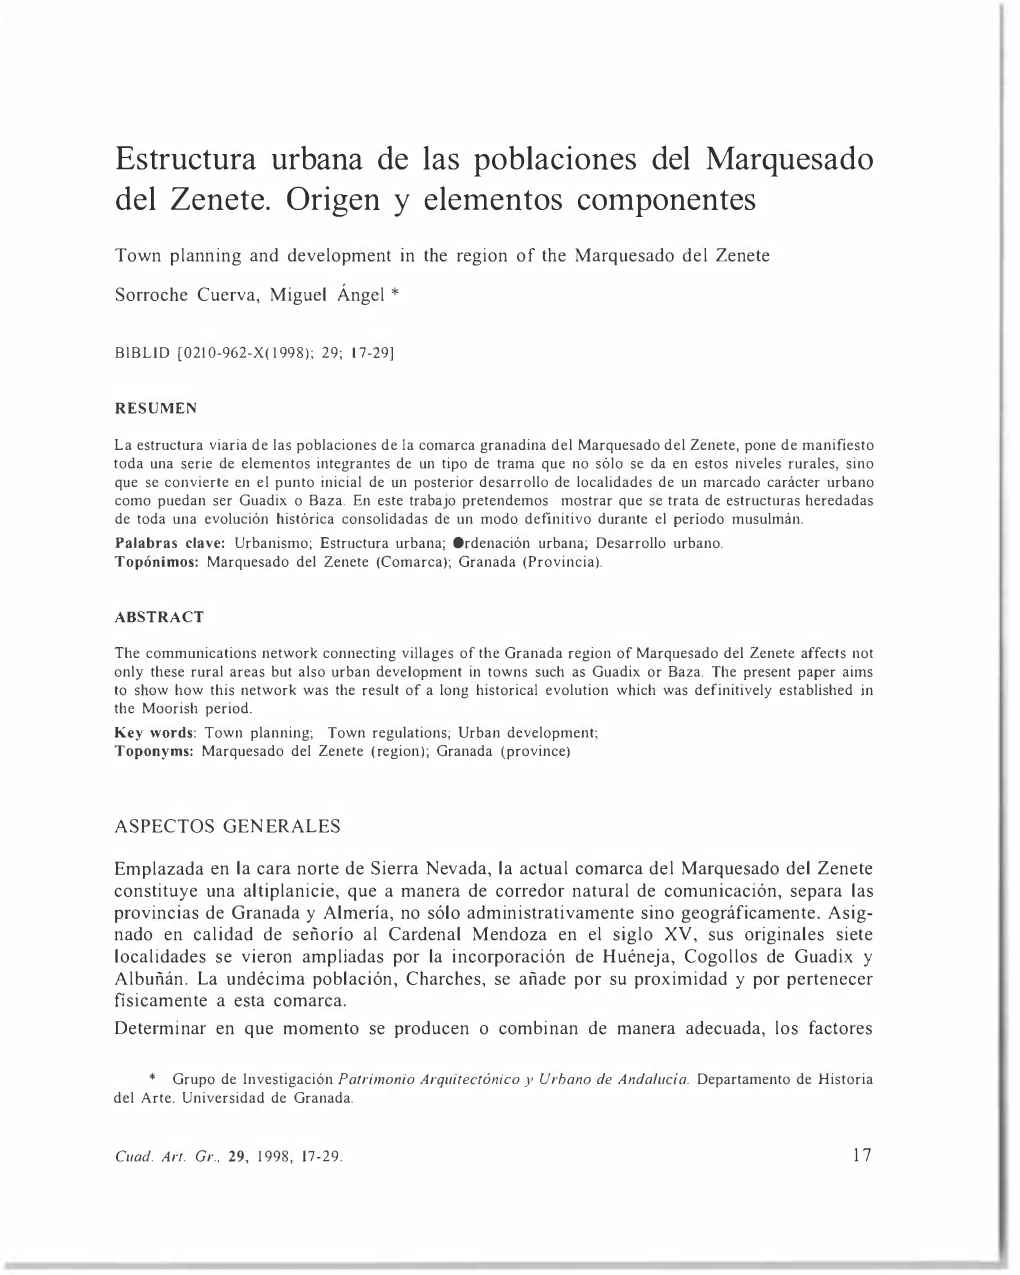 Estructura Urbana De Las Poblaciones Del Marquesado Del Zenete. Origen Y Elementos Componentes